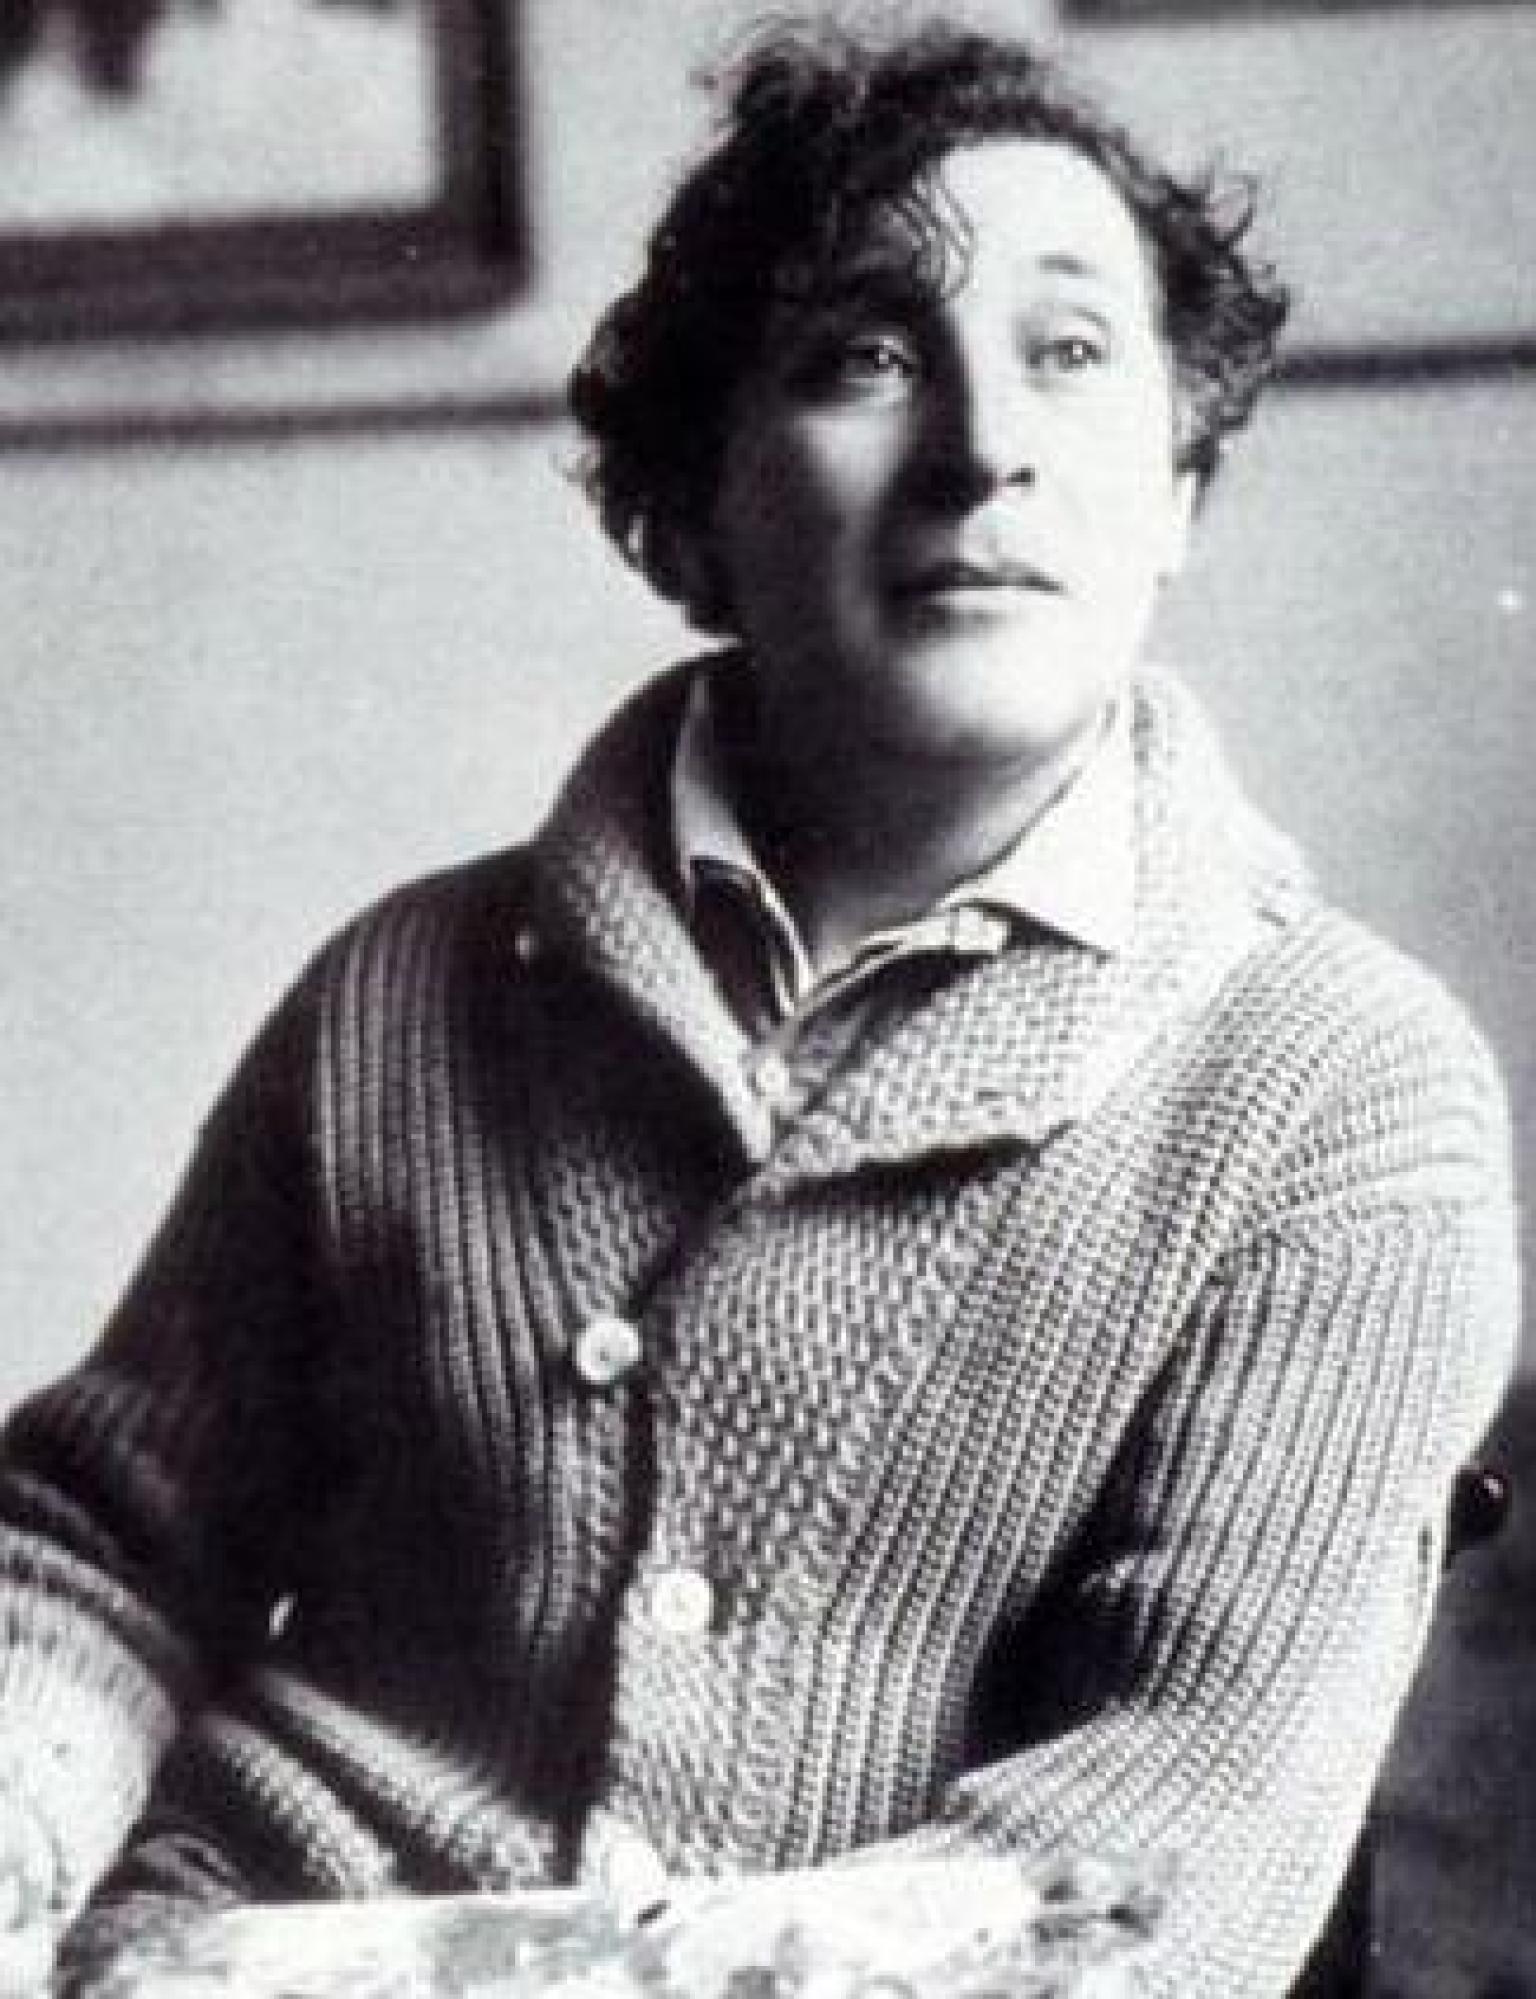 Marc Chagall - 6. Juli 1887 - 28. März 1985